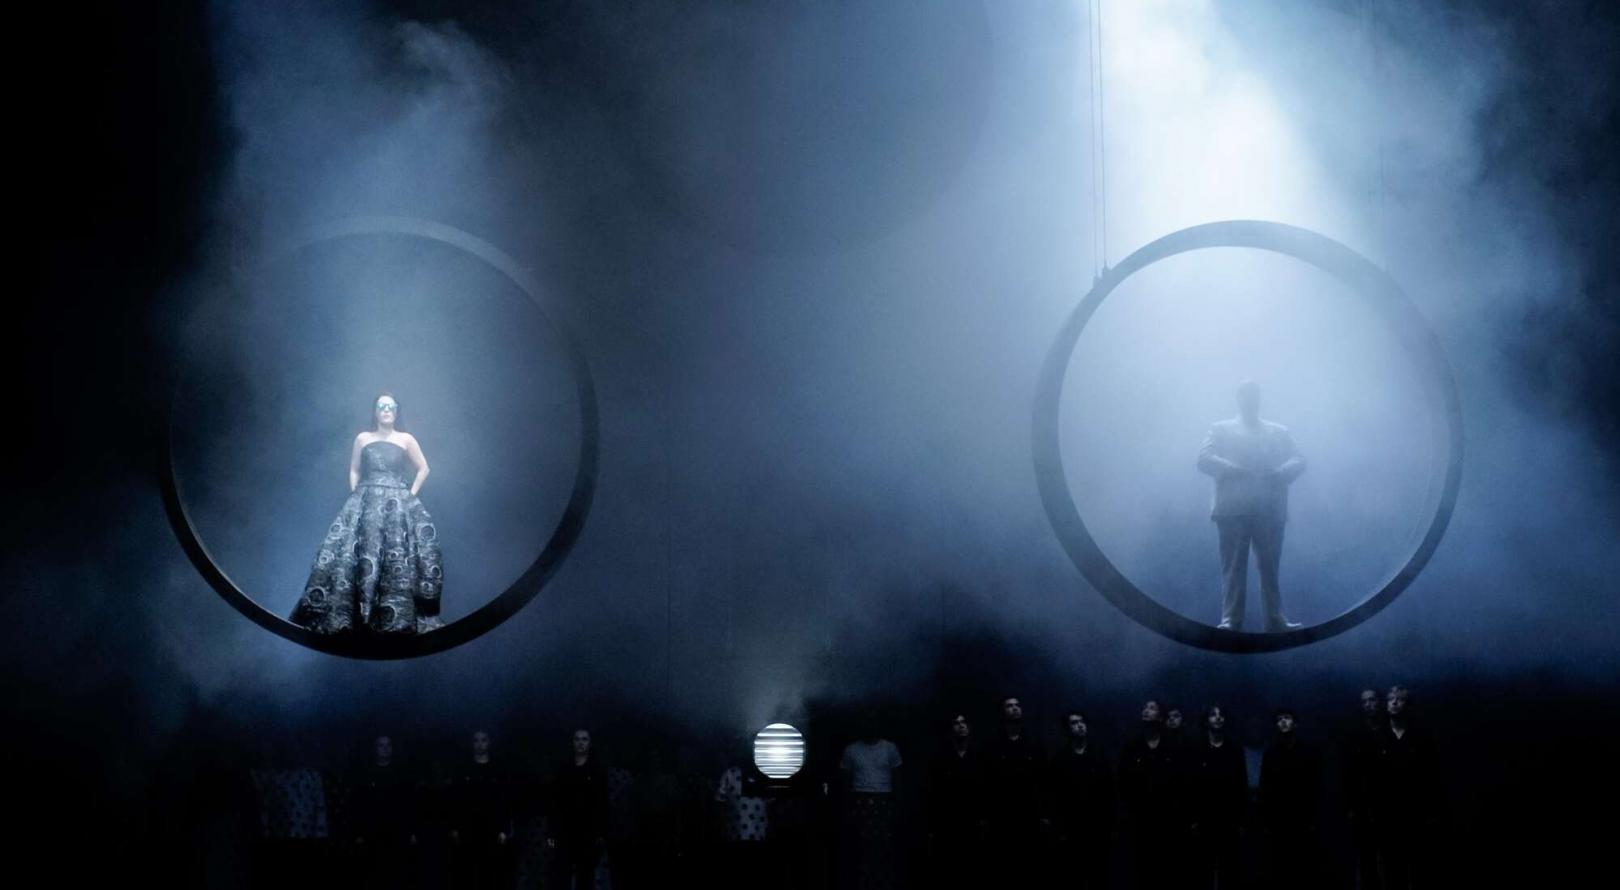 Szene auf einer Theaterbühne: männliche und weibliche Figur jeweils in einem Ring stehend schweben über der Bühne